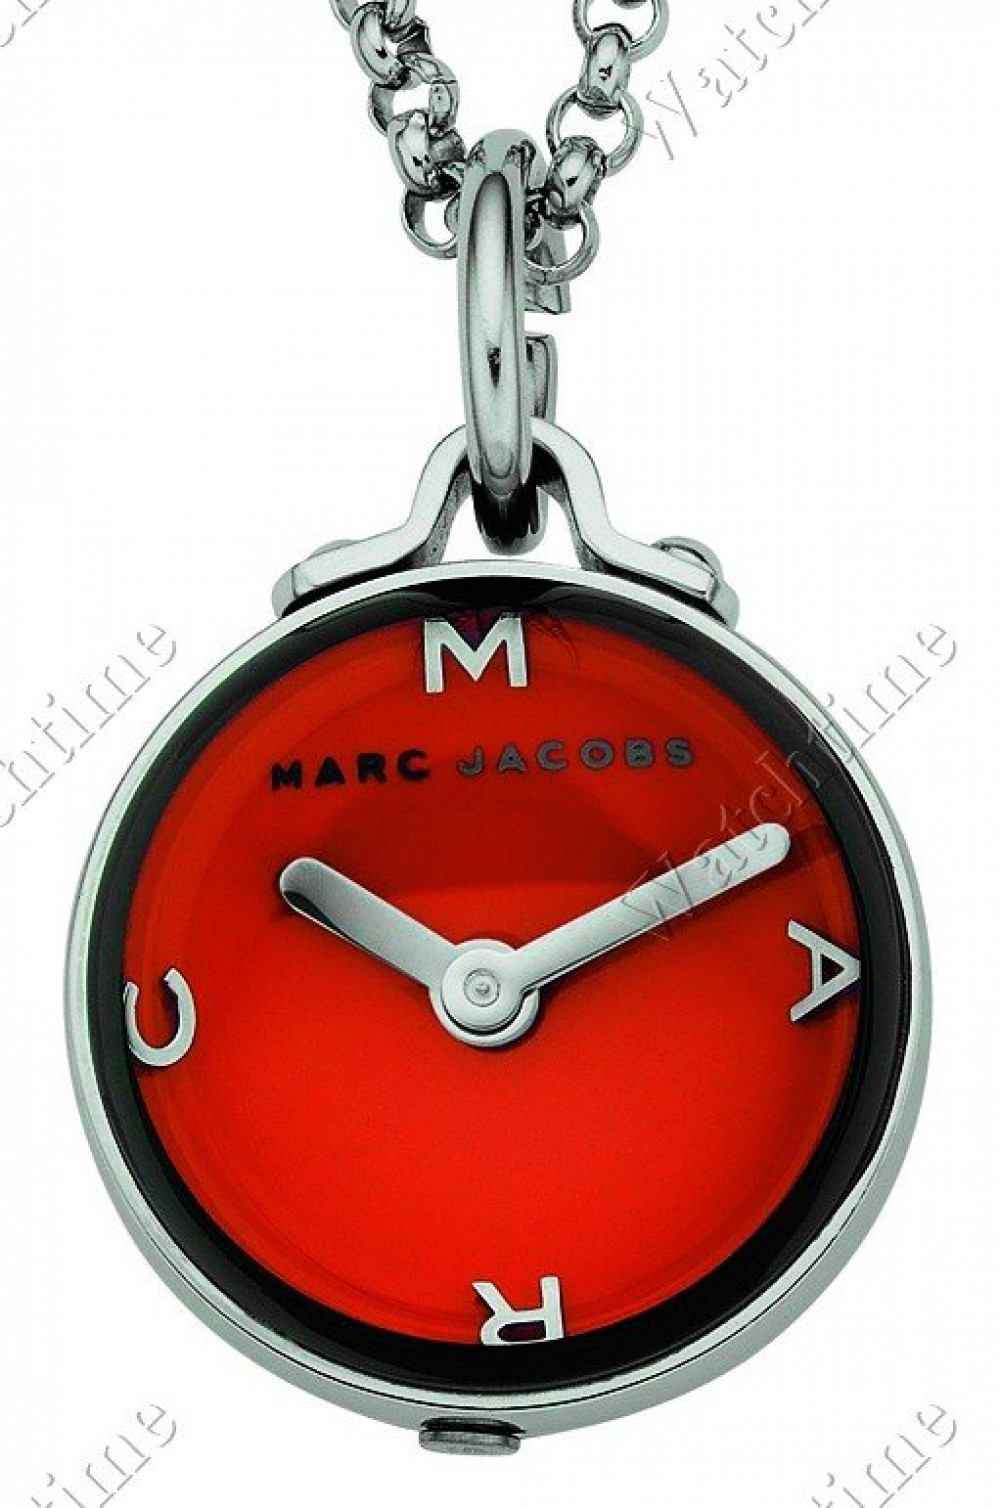 Zegarek firmy Marc by Marc Jacobs, model MBM 7017